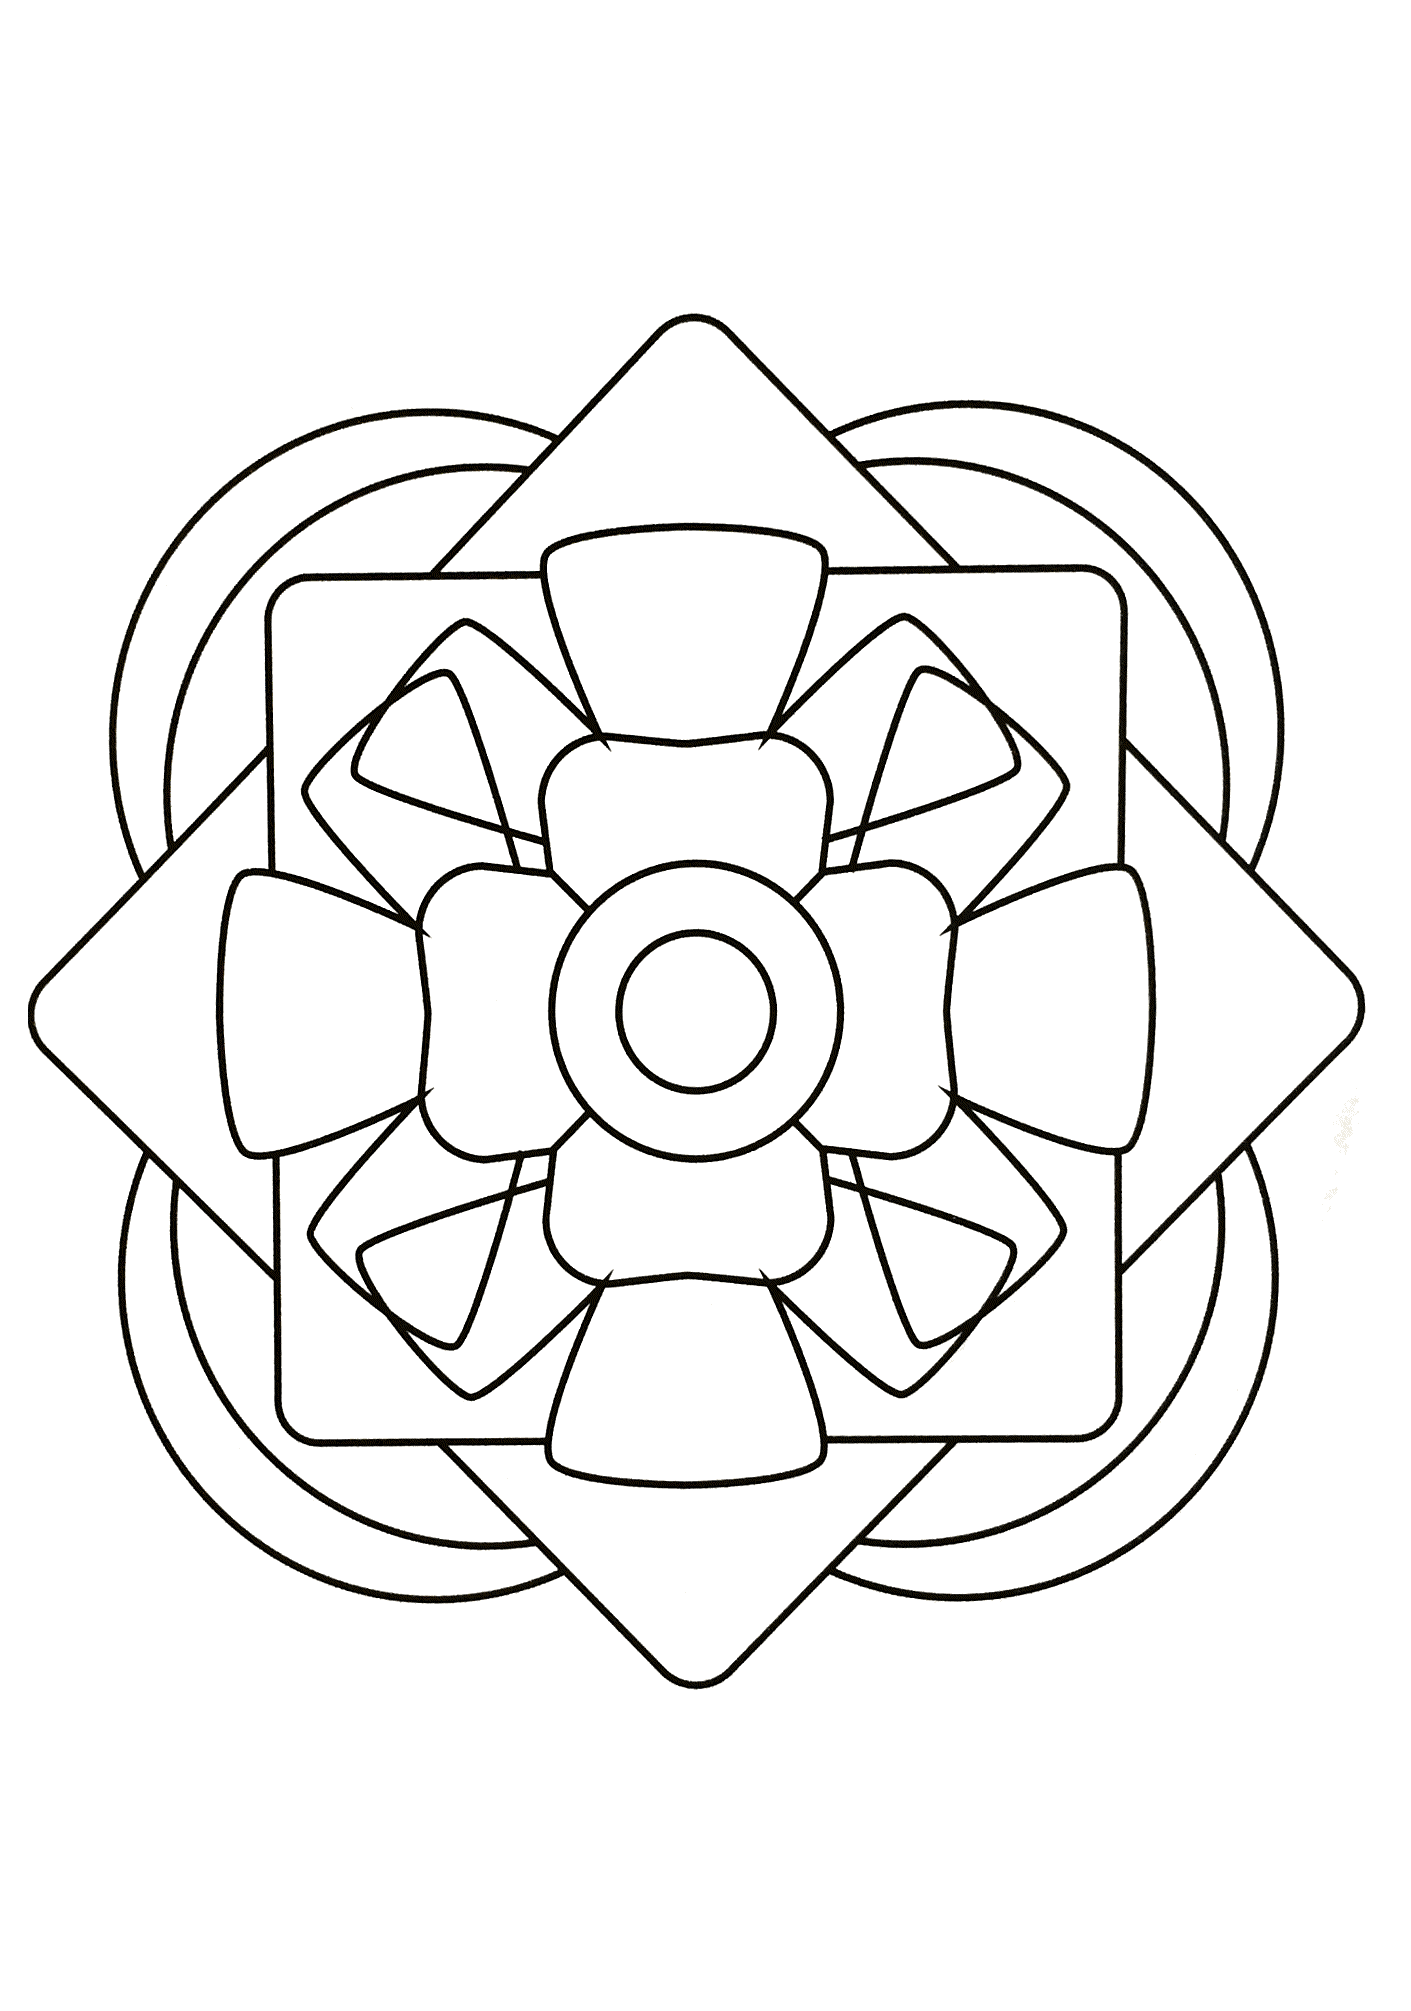 Superbe mandala à colorier de différentes formes géométrique telles que plusieurs cercles ainsi que différents arcs de cercles autour de celui-ci.